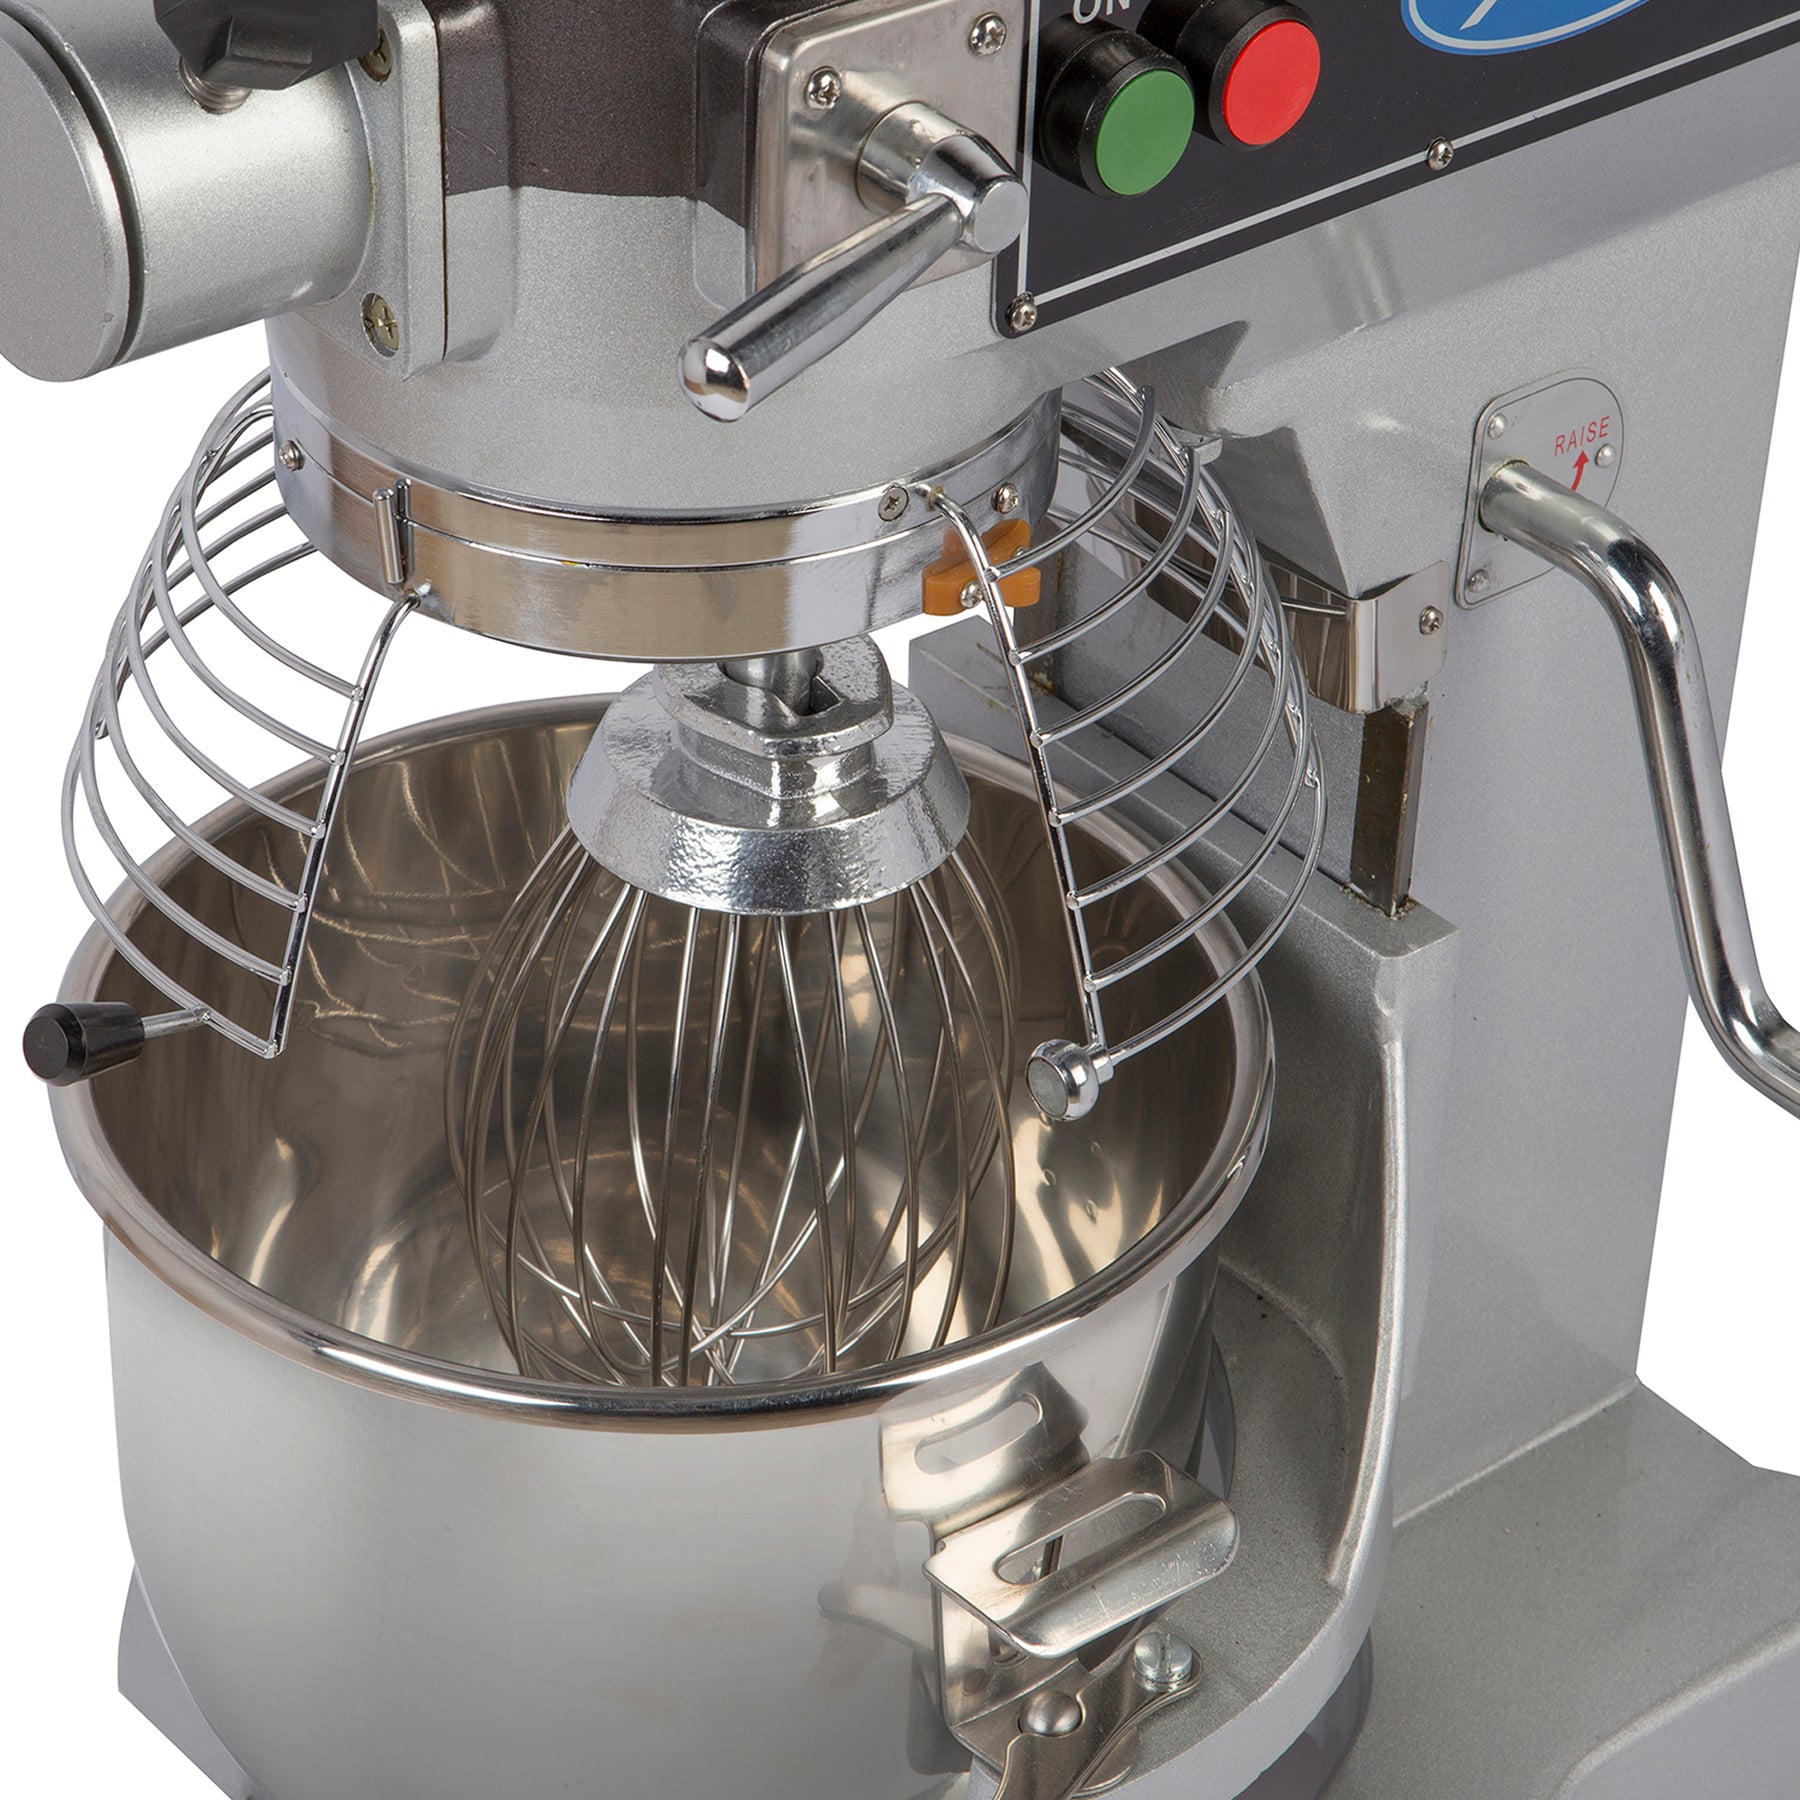 NEW 10 Quart Mixer Machine Countertop Bakery Kitchen Equipment 110V NSF ETL